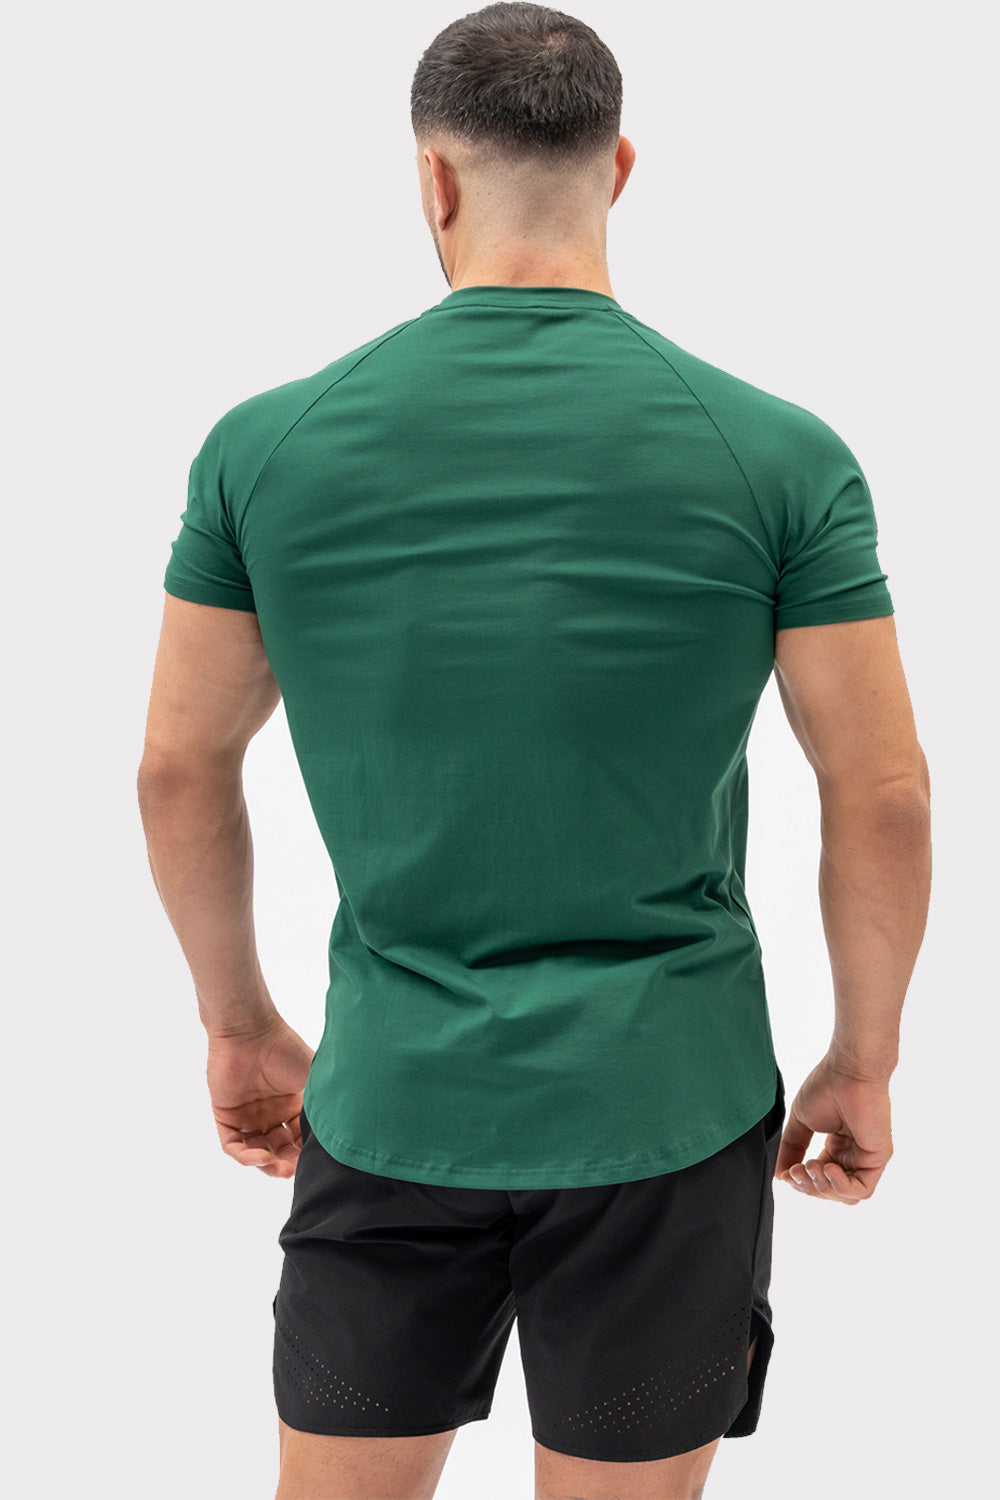 A CODE T-Shirt - Vert Foncé